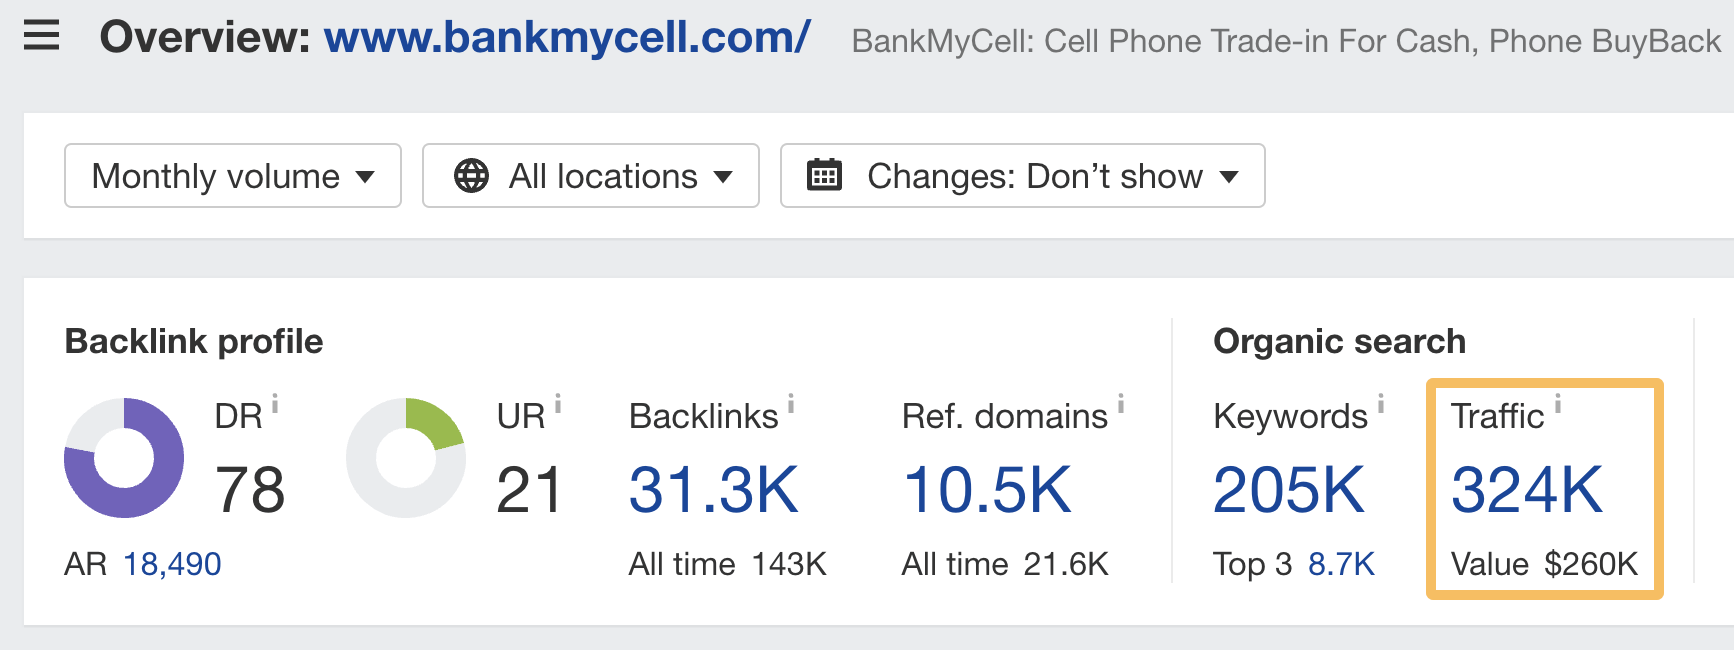 Overview of bankmycell.com, via Ahrefs' Site Explorer